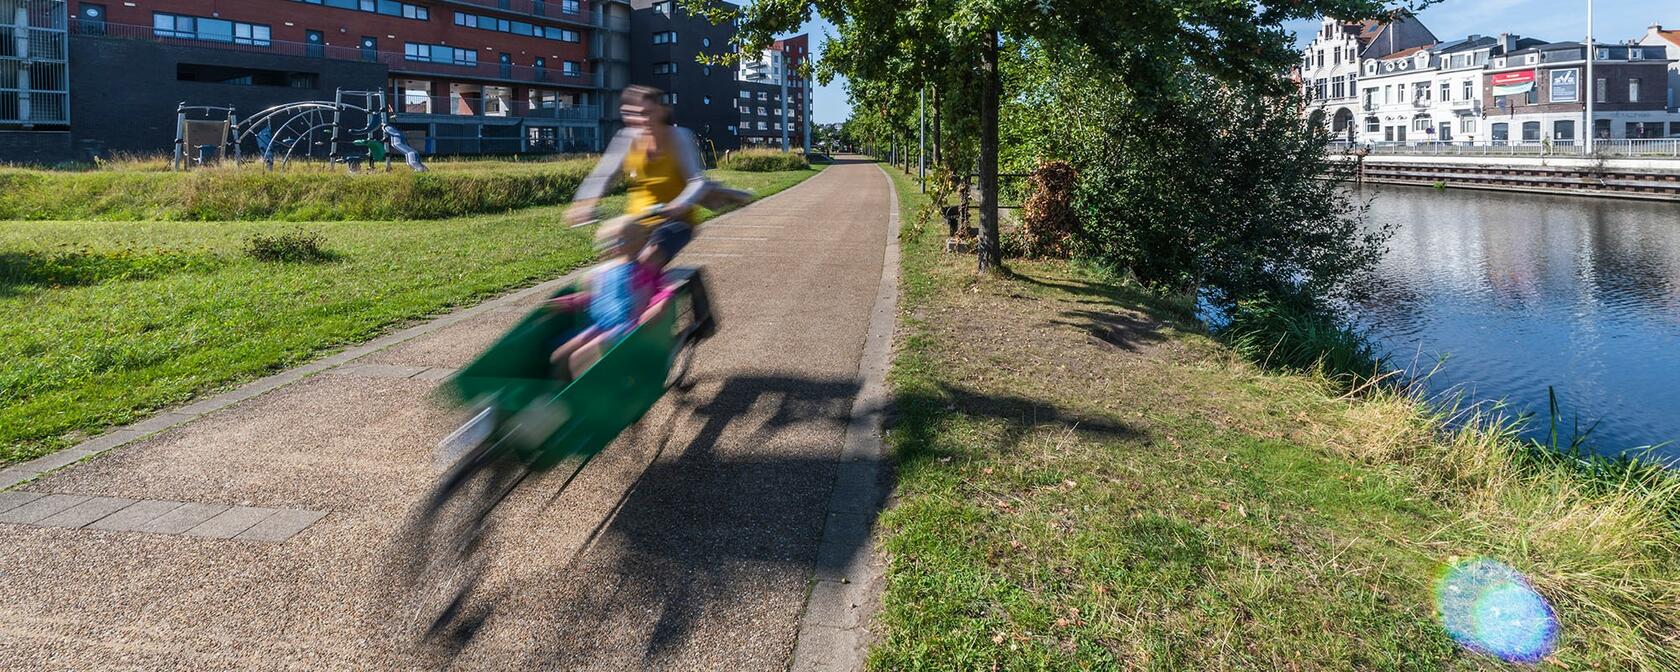 wijkmobiliteitsplan oud-gentbrugge banner 800px hoog man met bakfiets en kind